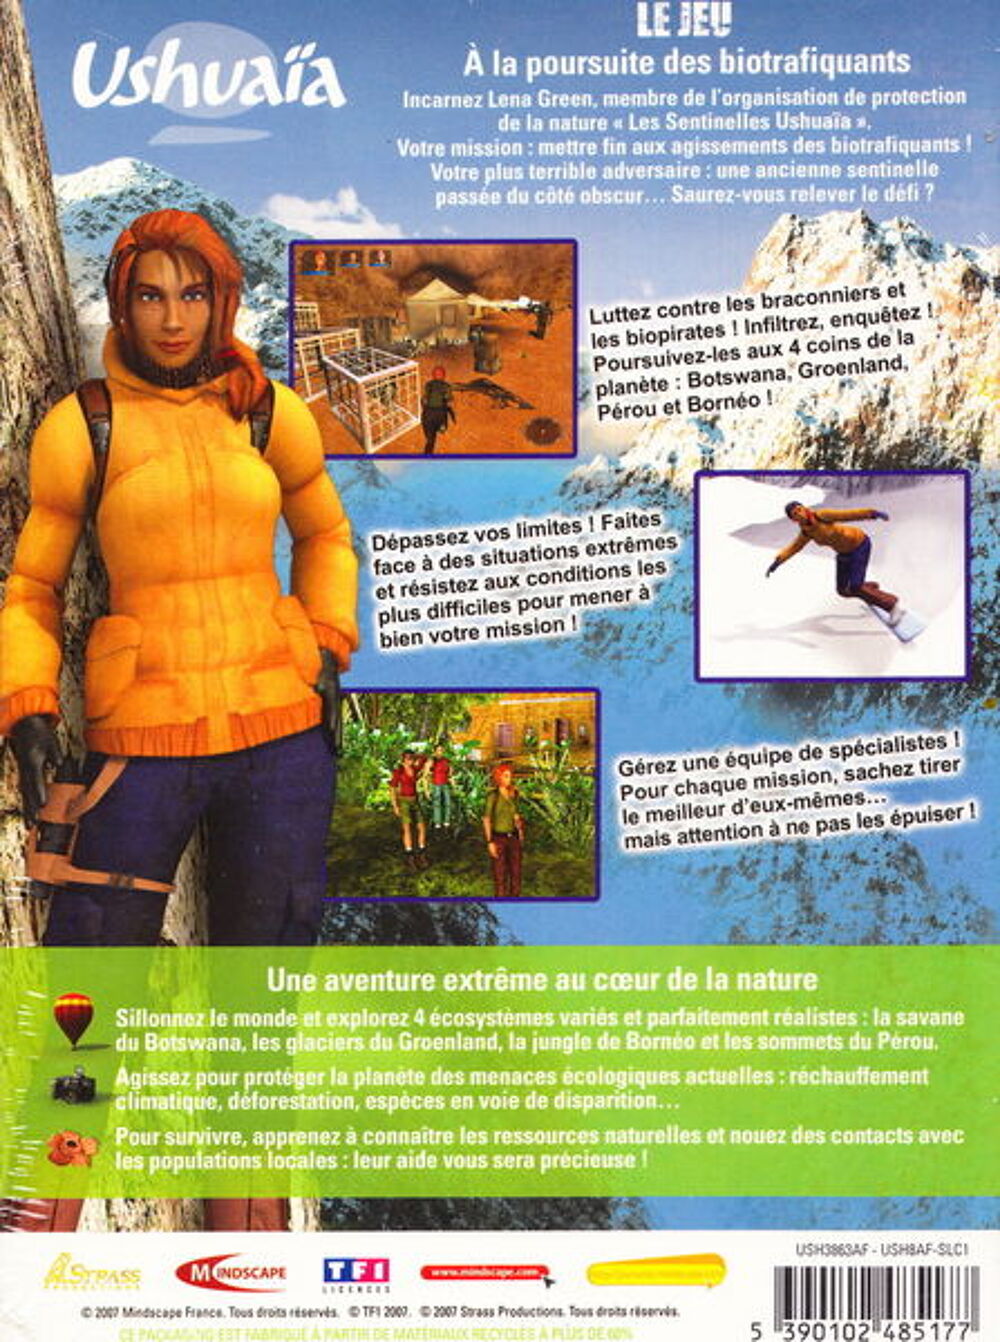 jeuPC Ushuaia Le jeu, A la poursuite des biotrafiquantsNEUF
Consoles et jeux vidos